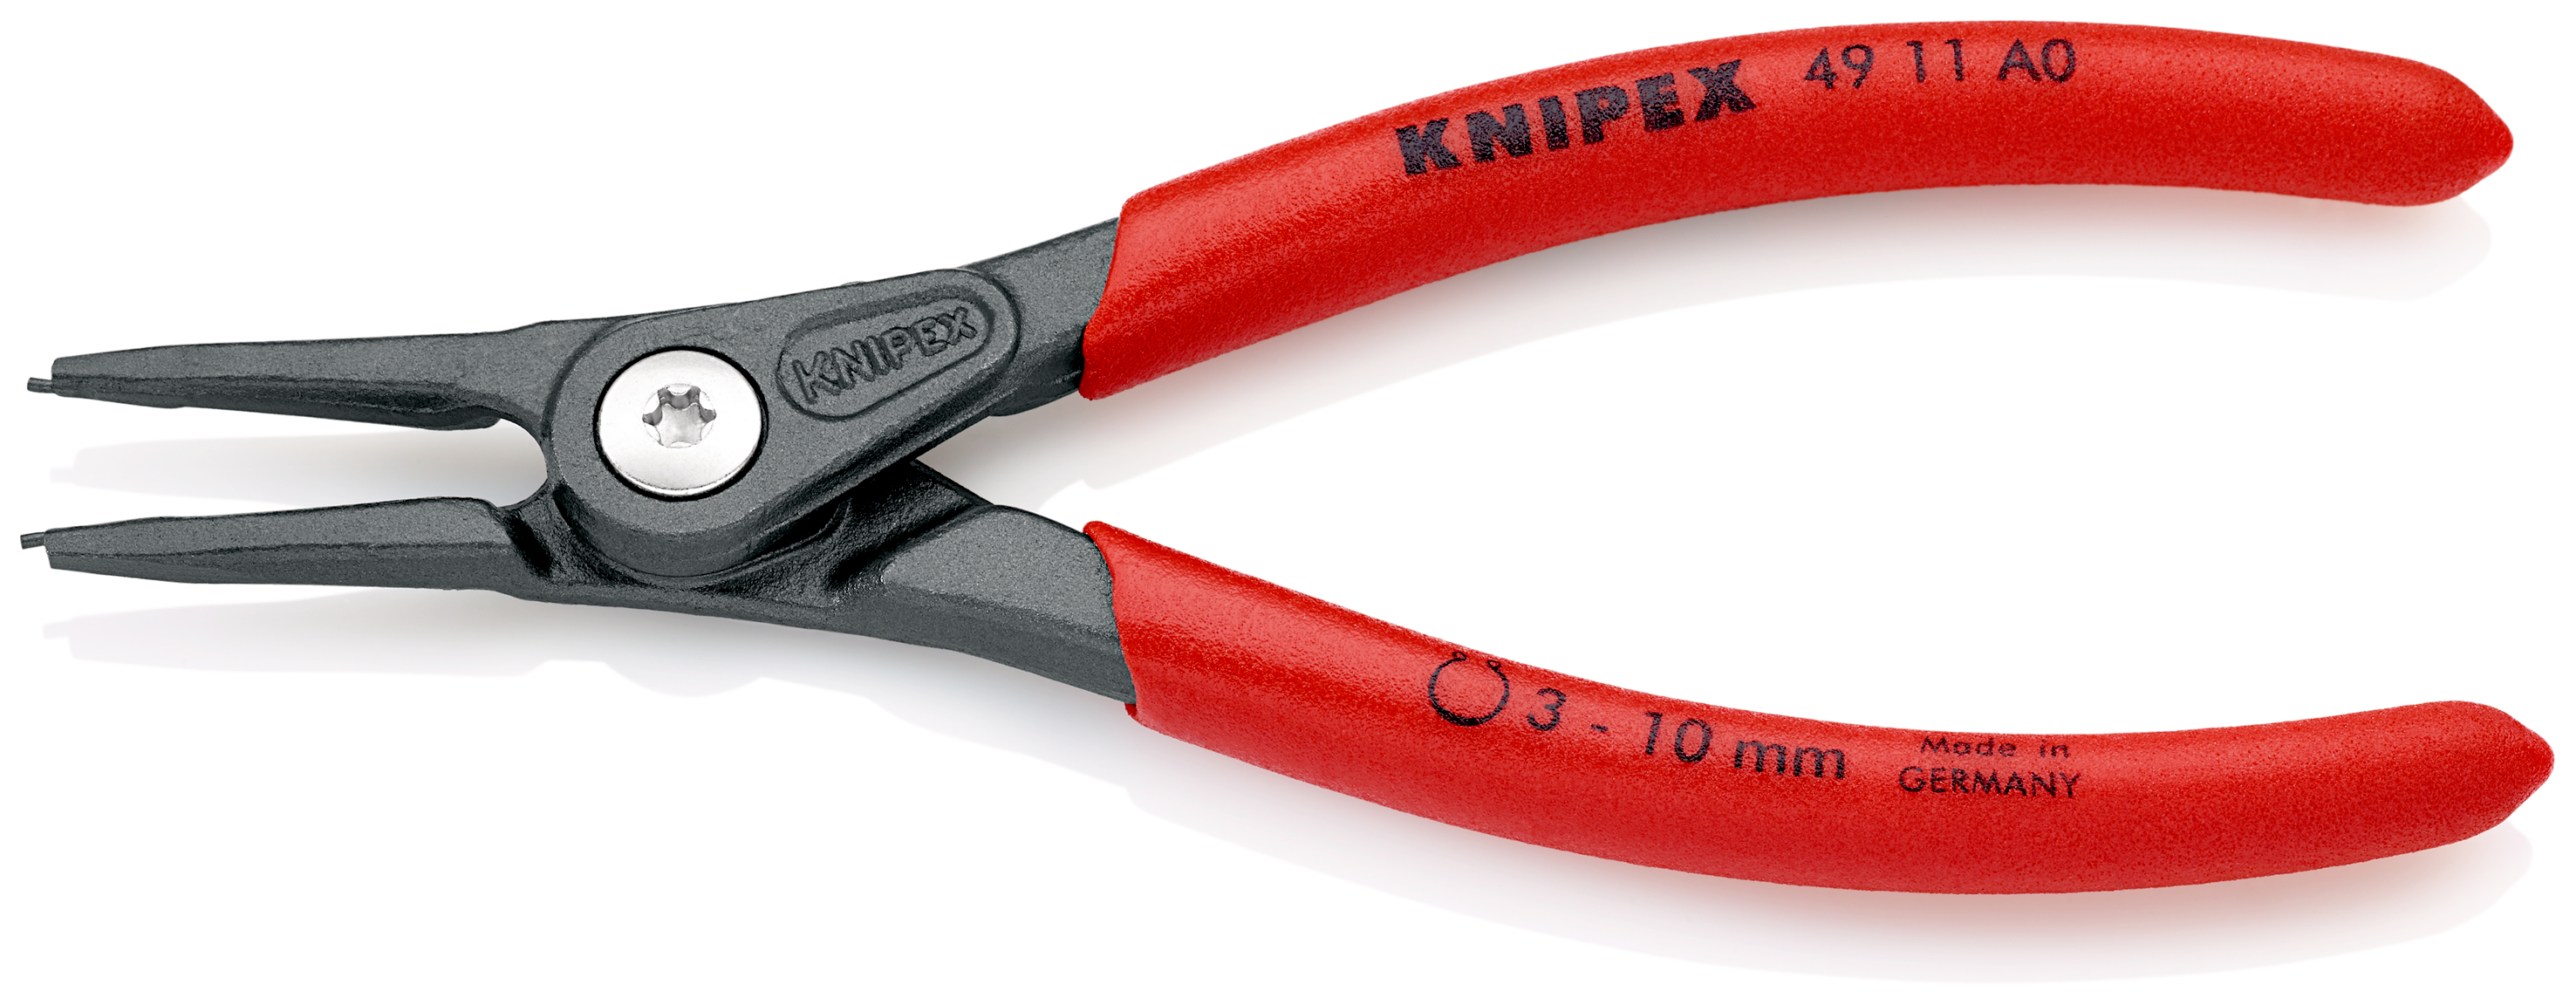 Knipex 4911A0 Cleste pentru inele de siguranță de interior, lungime 140 mm